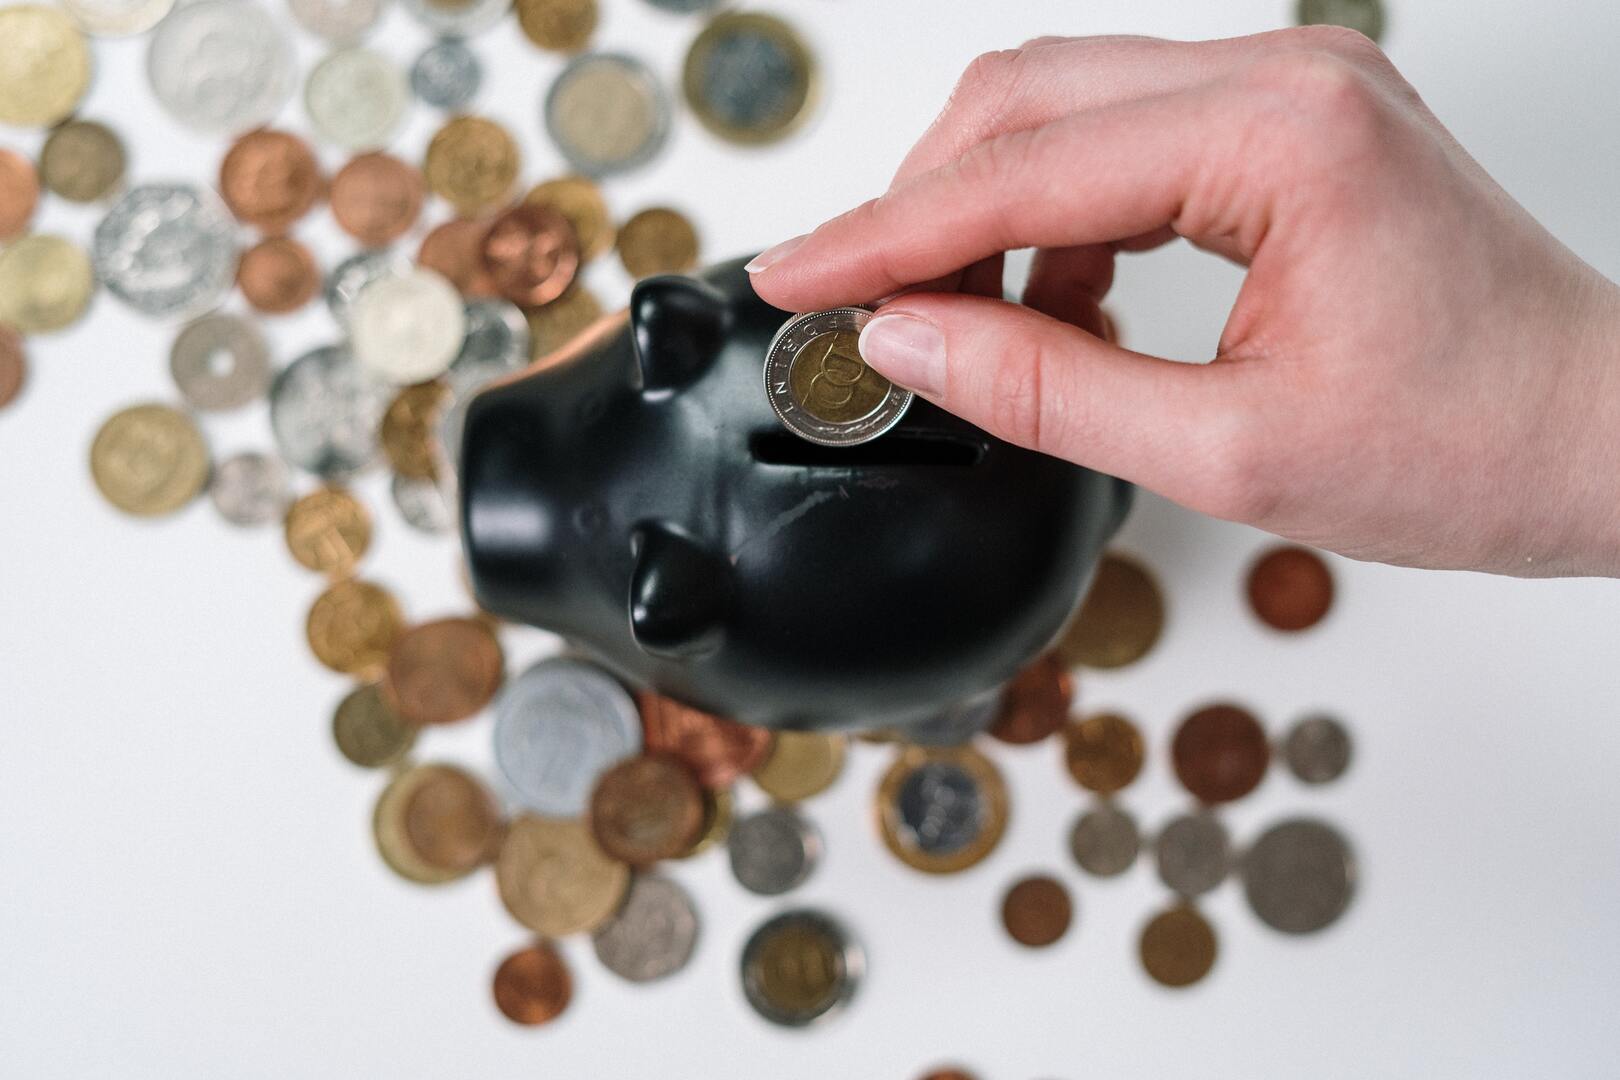 Coins going into a piggy bank